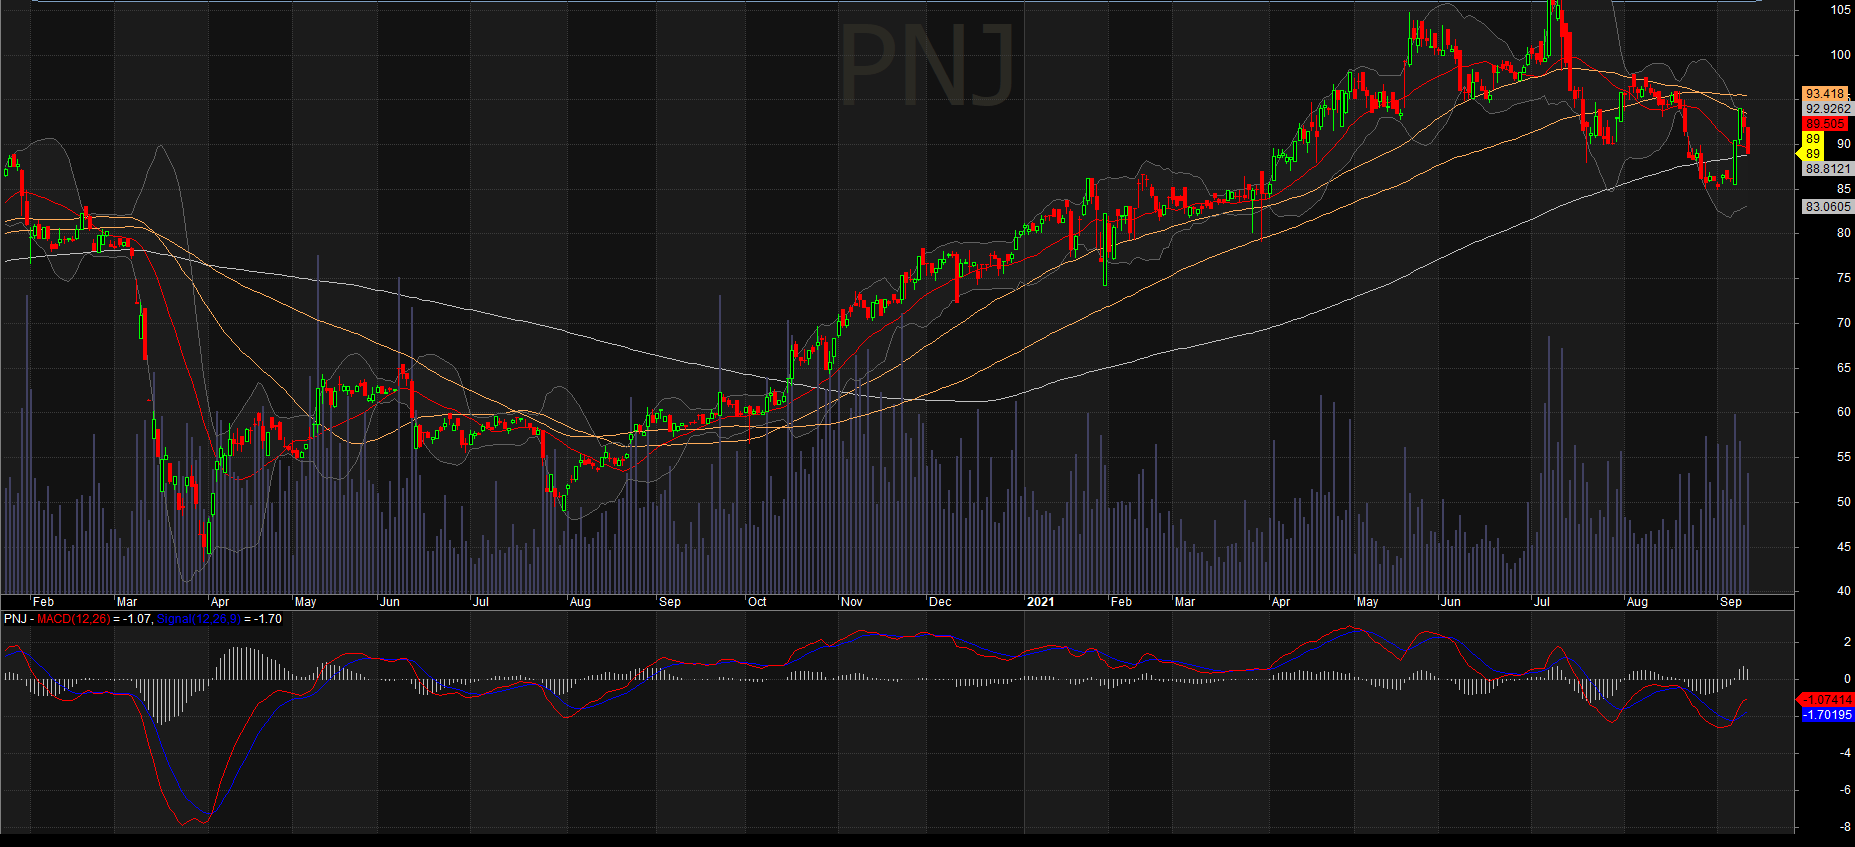 Lợi nhuận của cổ phiếu PNJ